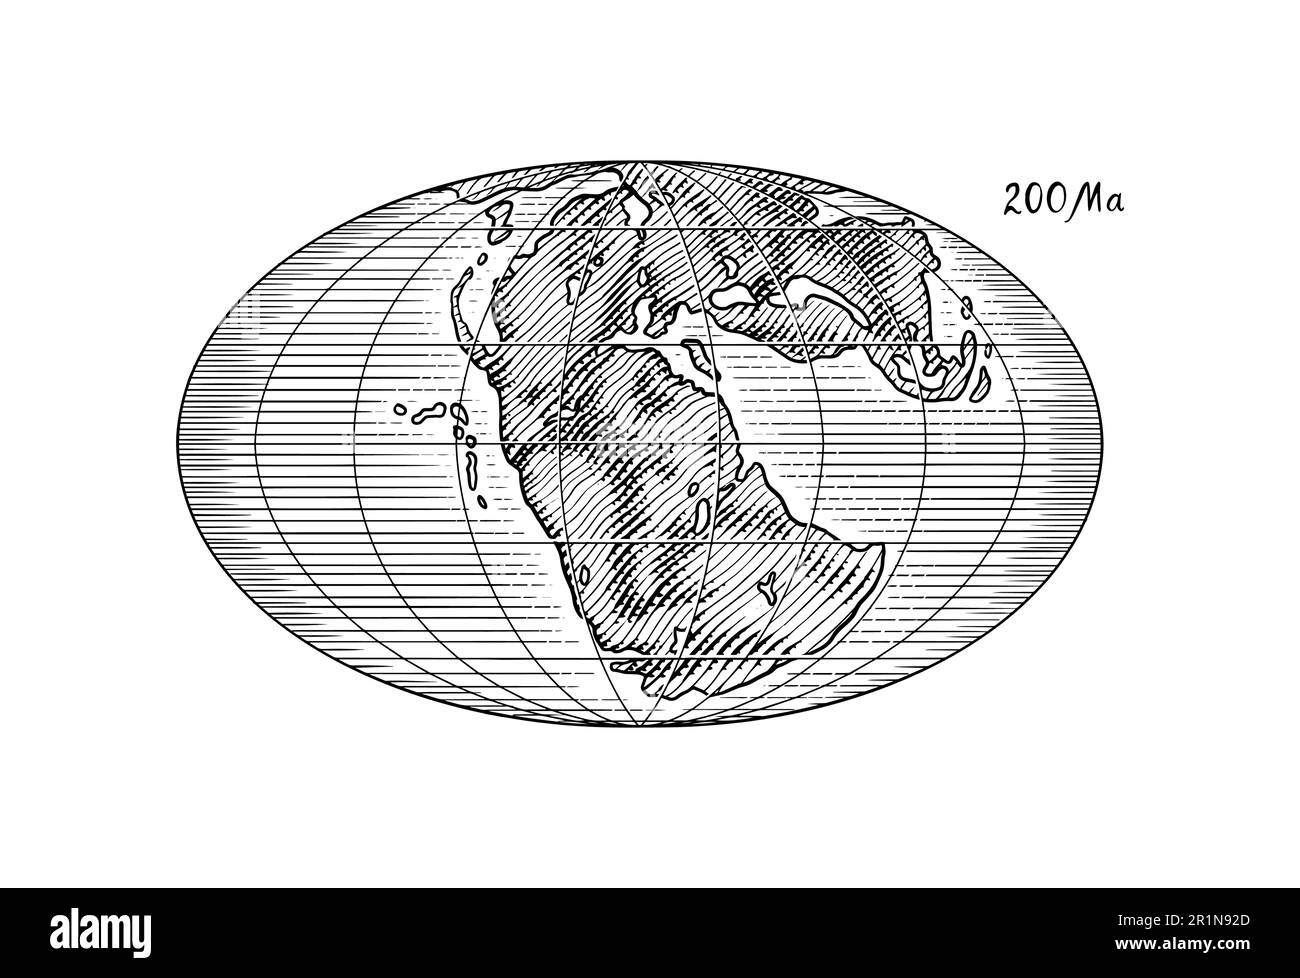 Plaque tectonique sur la planète Terre. Pangée. Dérive continentale. Supercontinent à 200 Ma. Époque des dinosaures. Période jurassique. Mésozoïque. Dessiné à la main Illustration de Vecteur